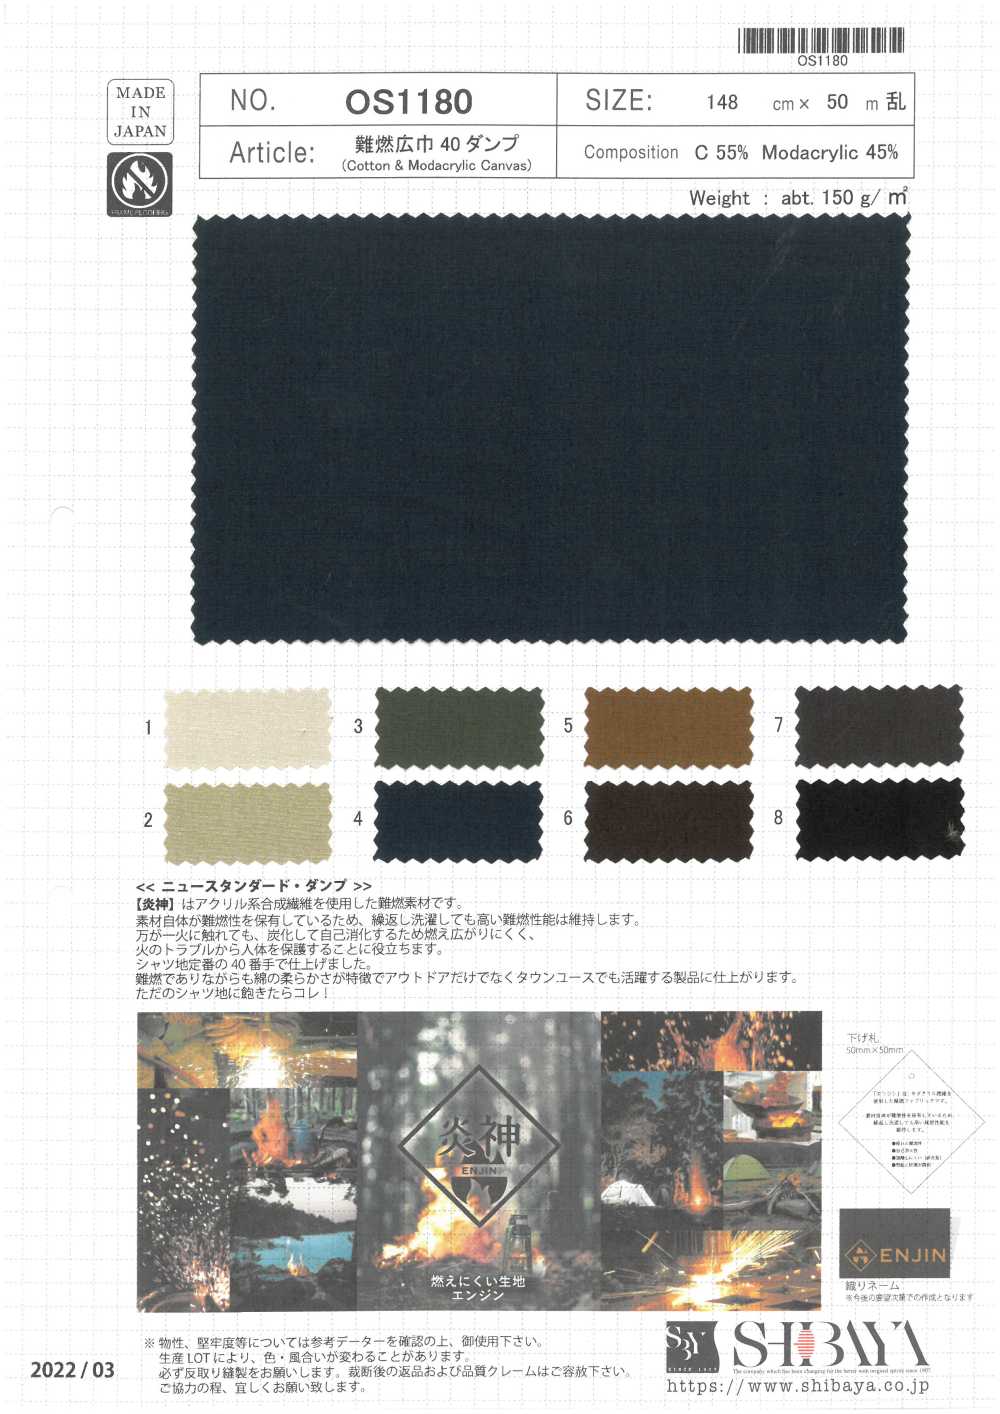 OS1180 Anchura De Llama 40 A Prueba De Plumón[Fabrica Textil] SHIBAYA